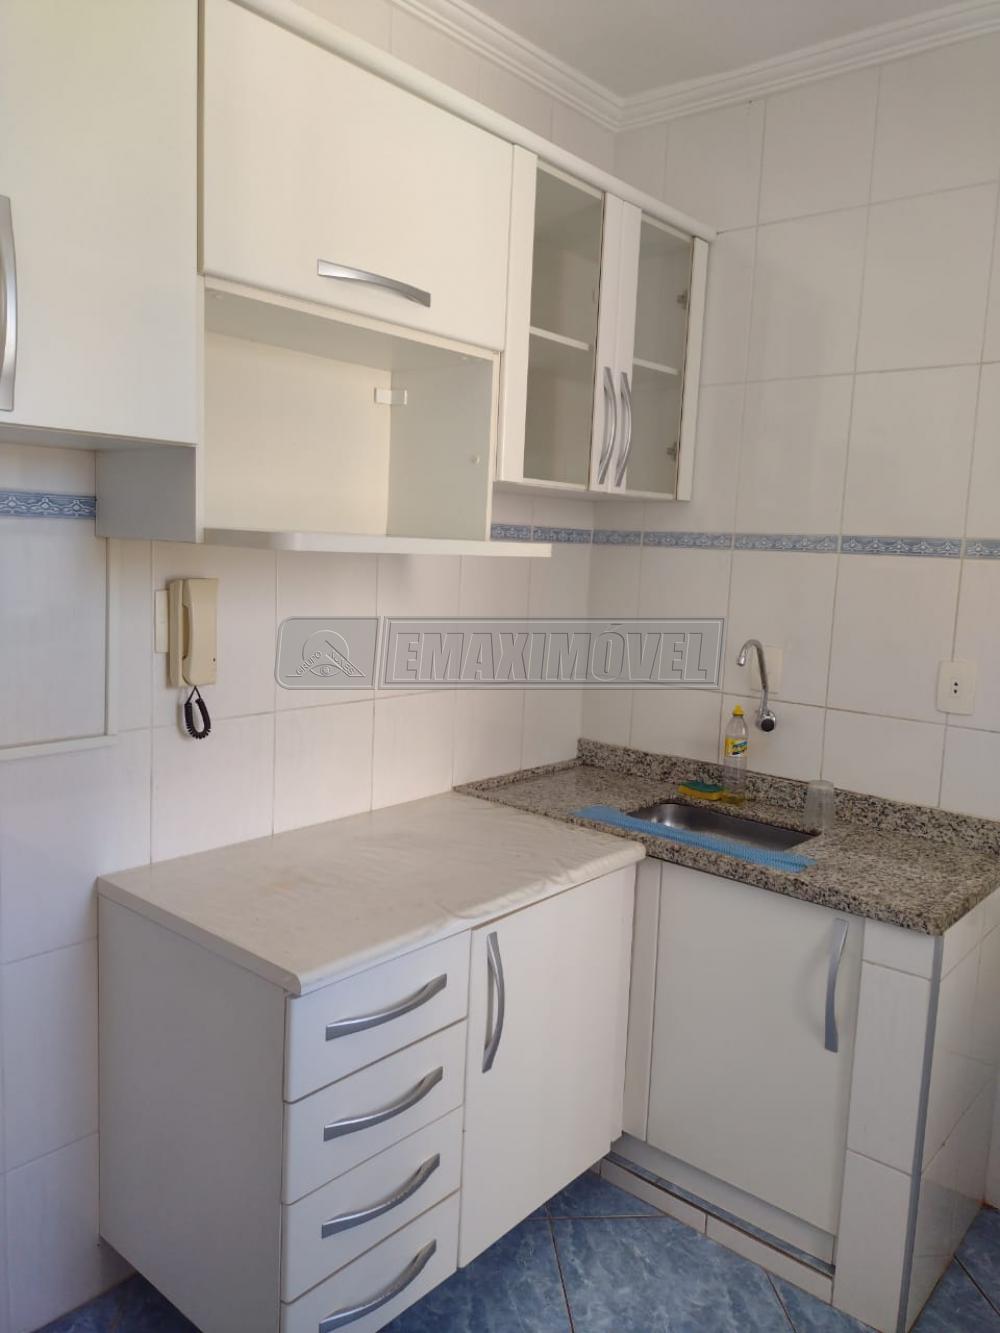 Alugar Apartamento / Padrão em Sorocaba R$ 1.200,00 - Foto 9